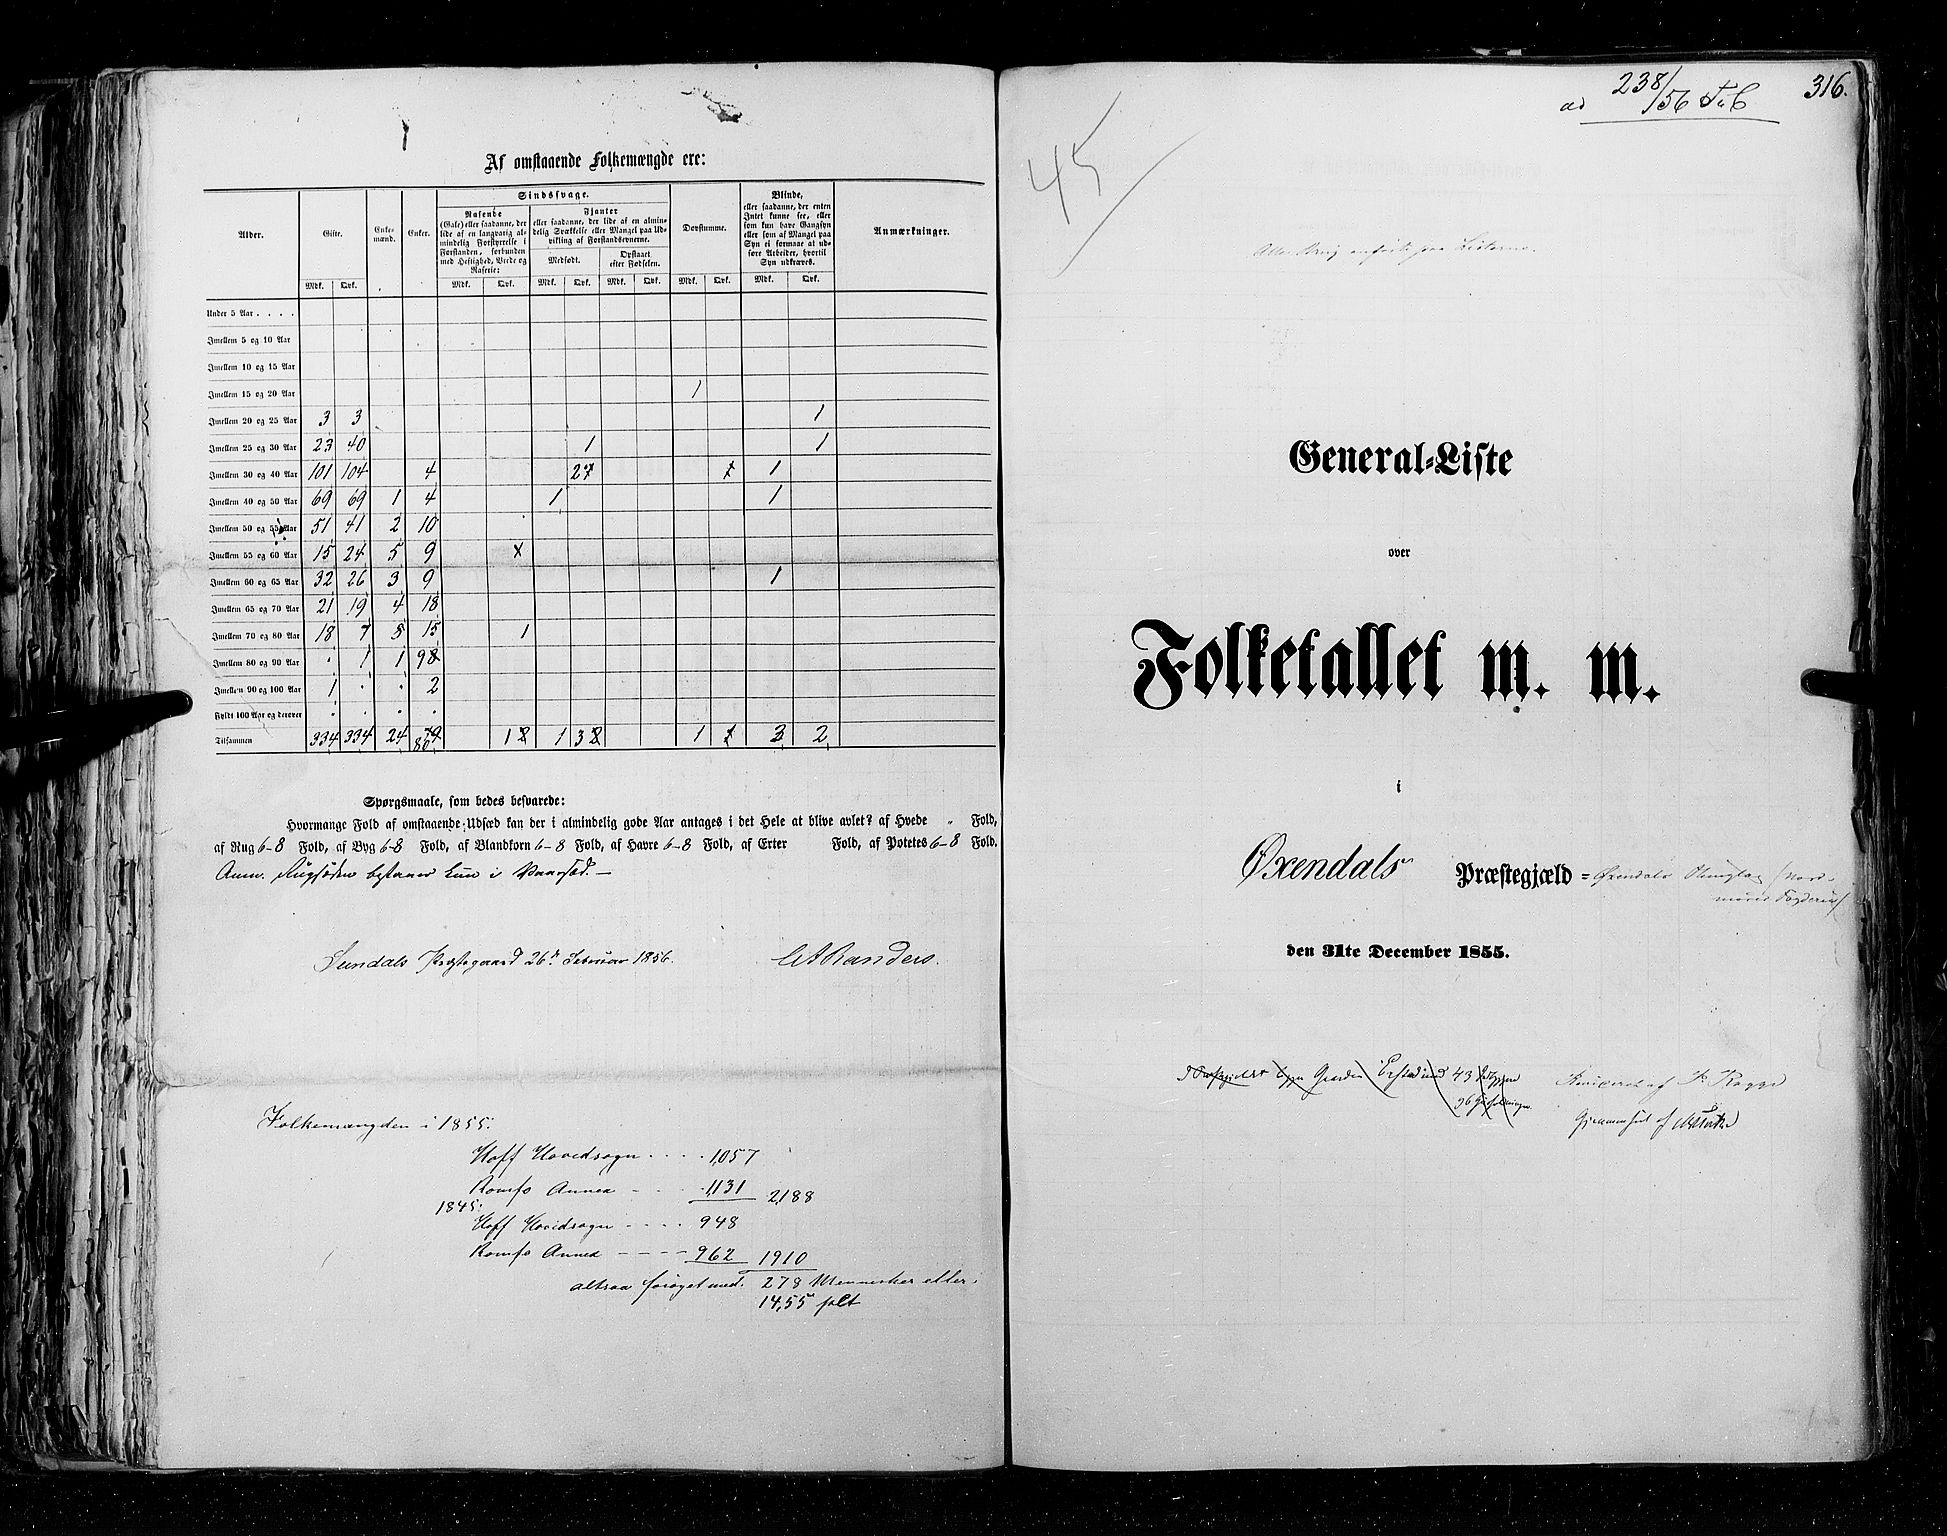 RA, Folketellingen 1855, bind 5: Nordre Bergenhus amt, Romsdal amt og Søndre Trondhjem amt, 1855, s. 316